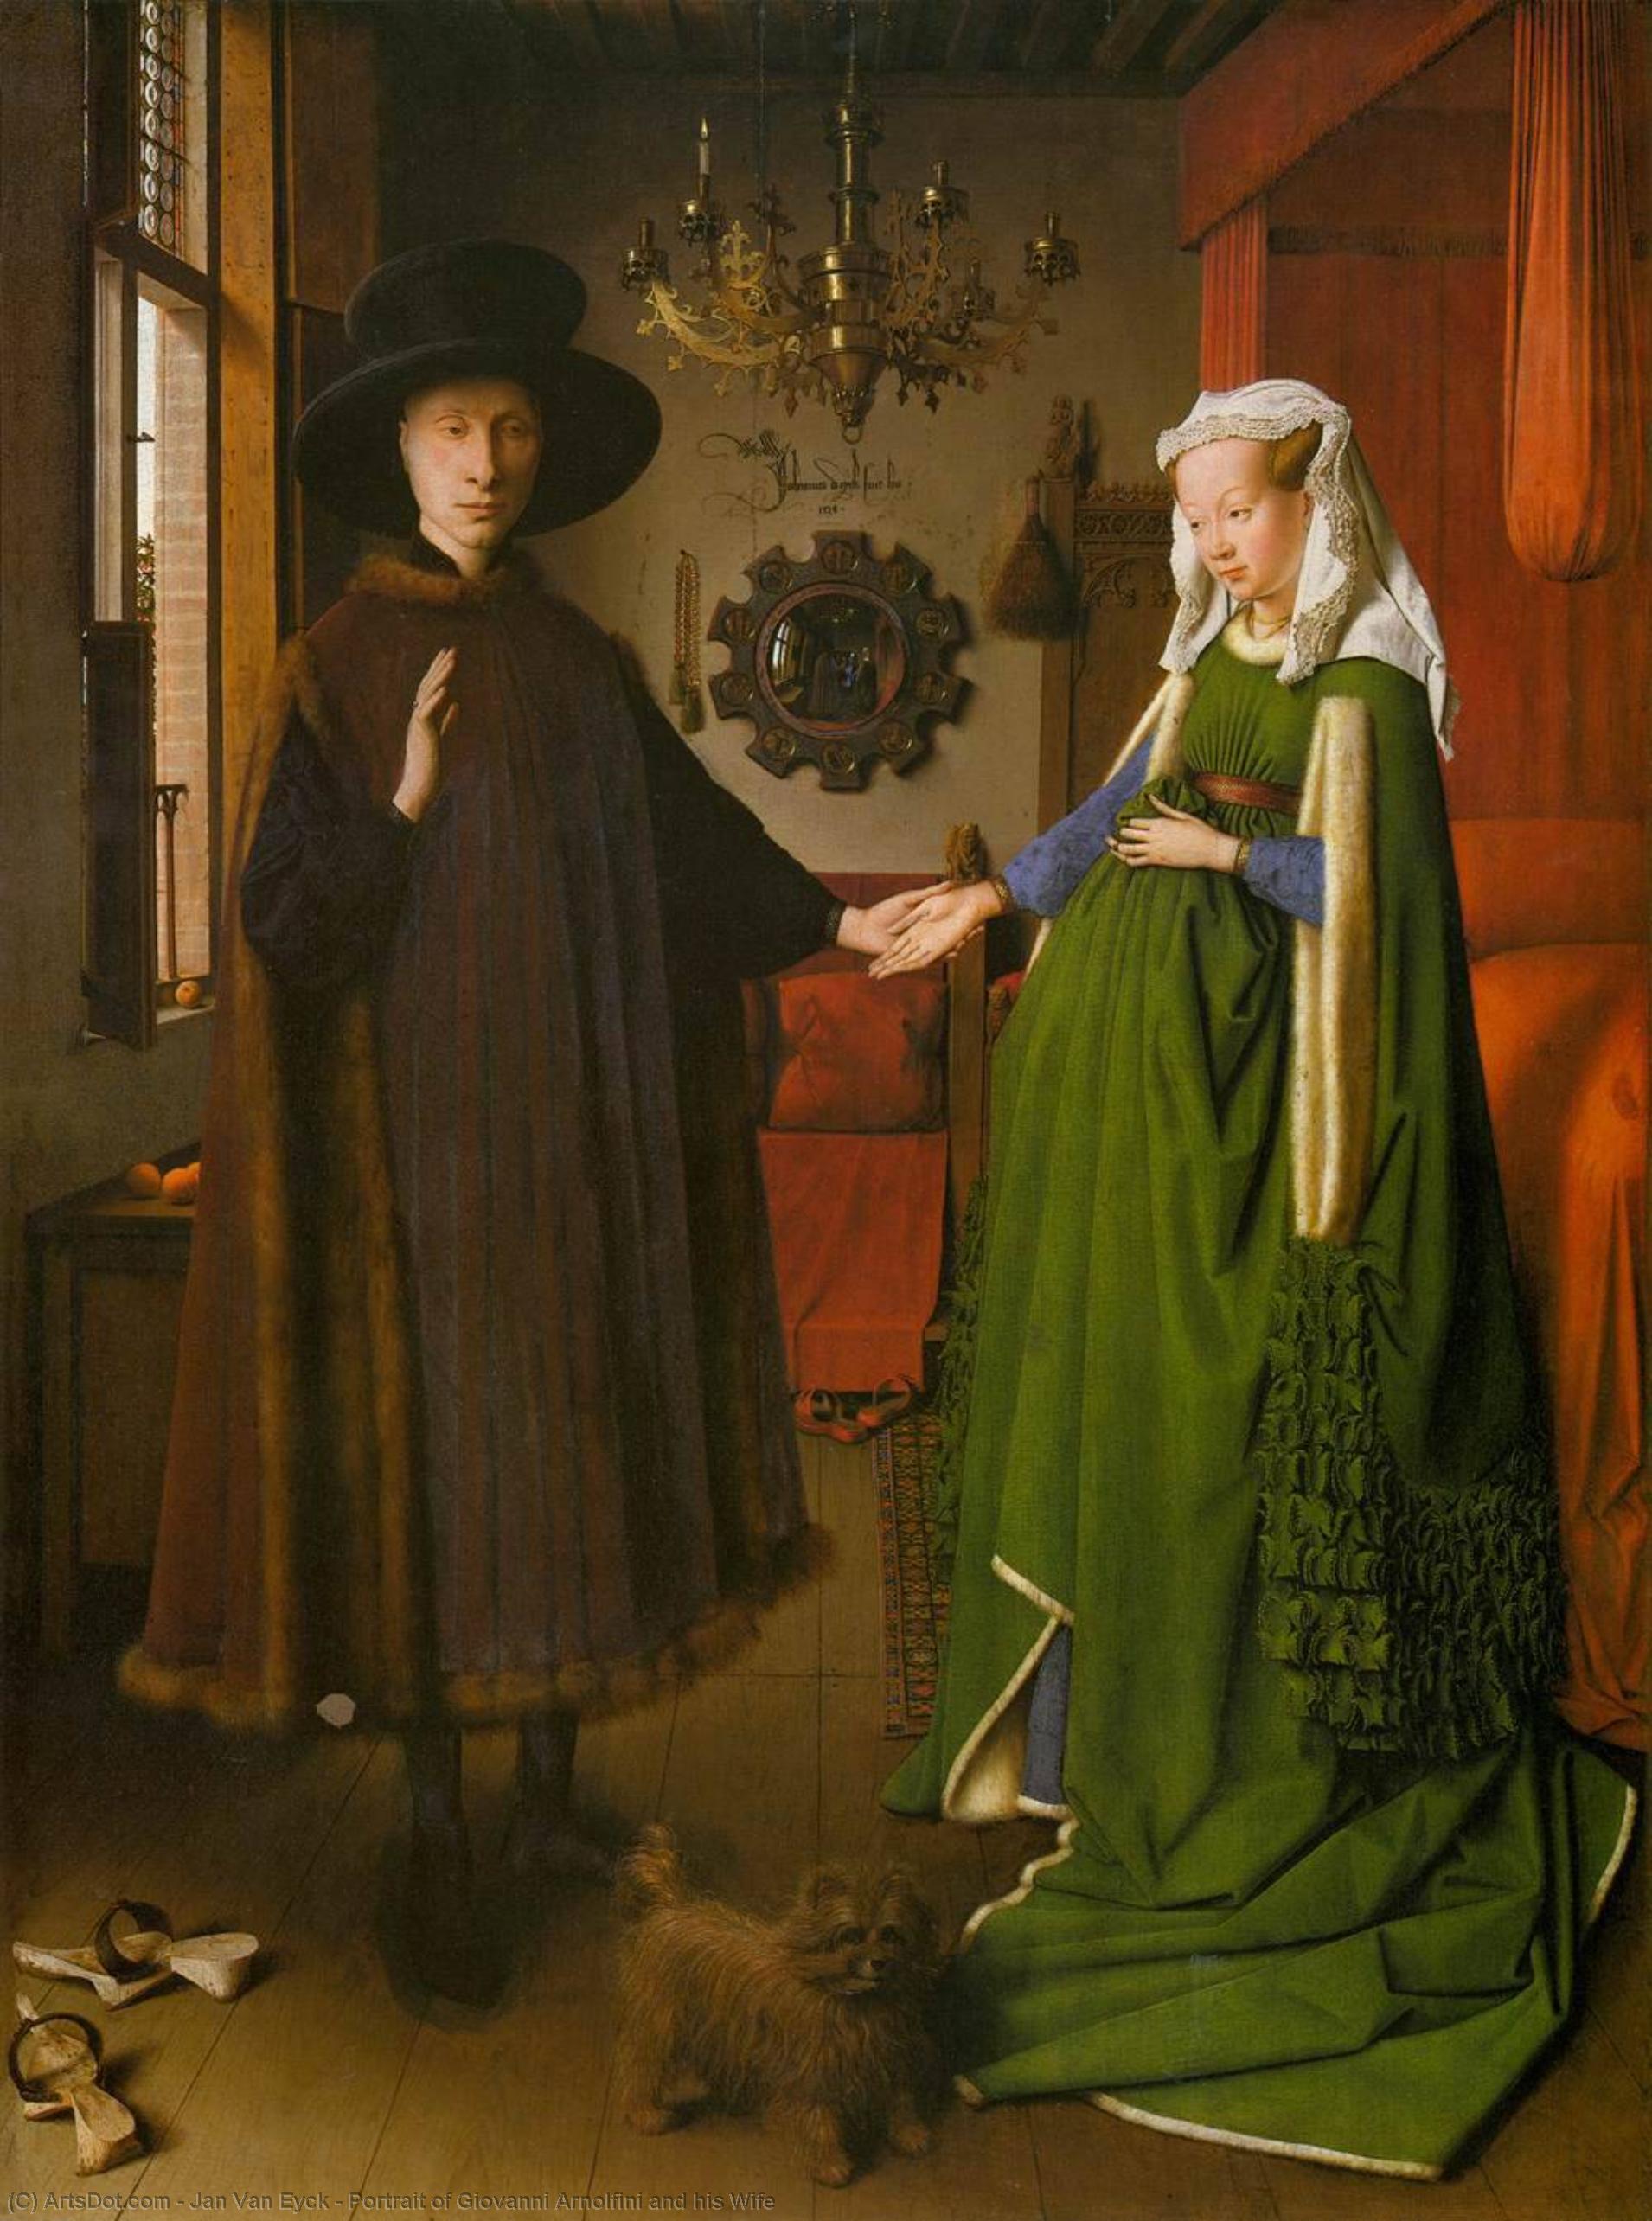 WikiOO.org - Encyclopedia of Fine Arts - Schilderen, Artwork Jan Van Eyck - Portrait of Giovanni Arnolfini and his Wife